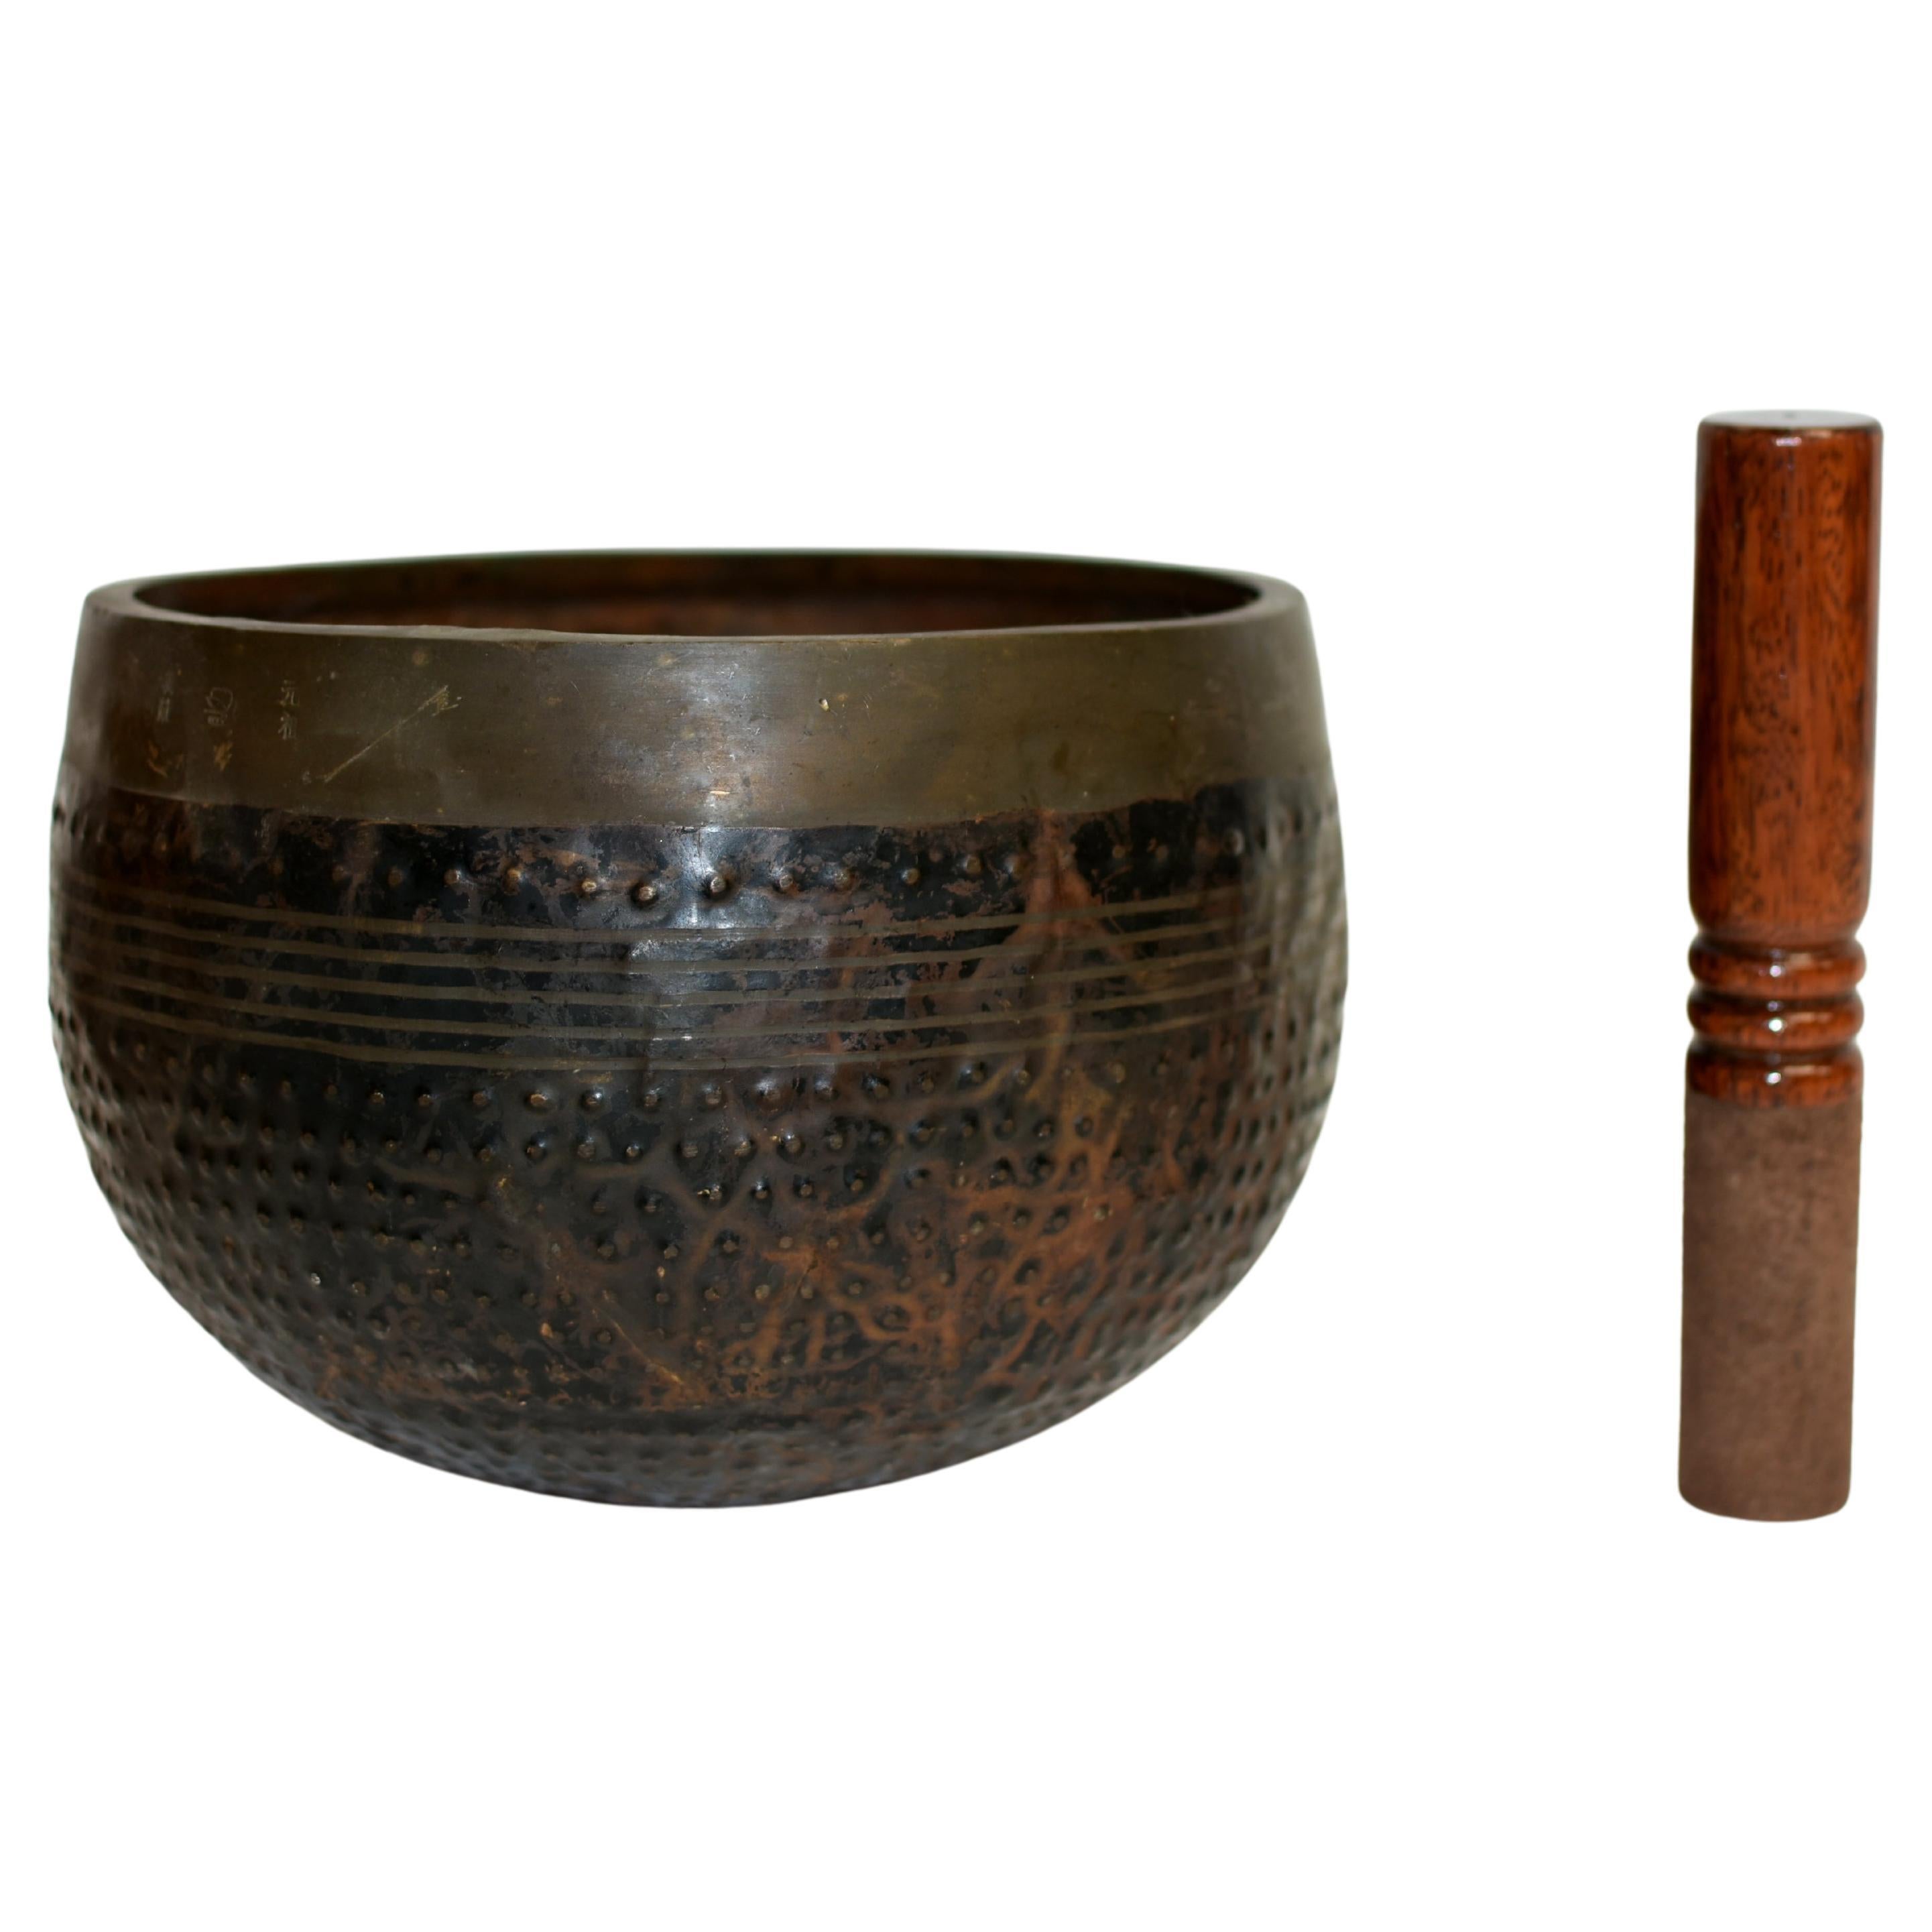 Original Japanese Antique Temple Singing Bowl Signed 10" C4 Tone